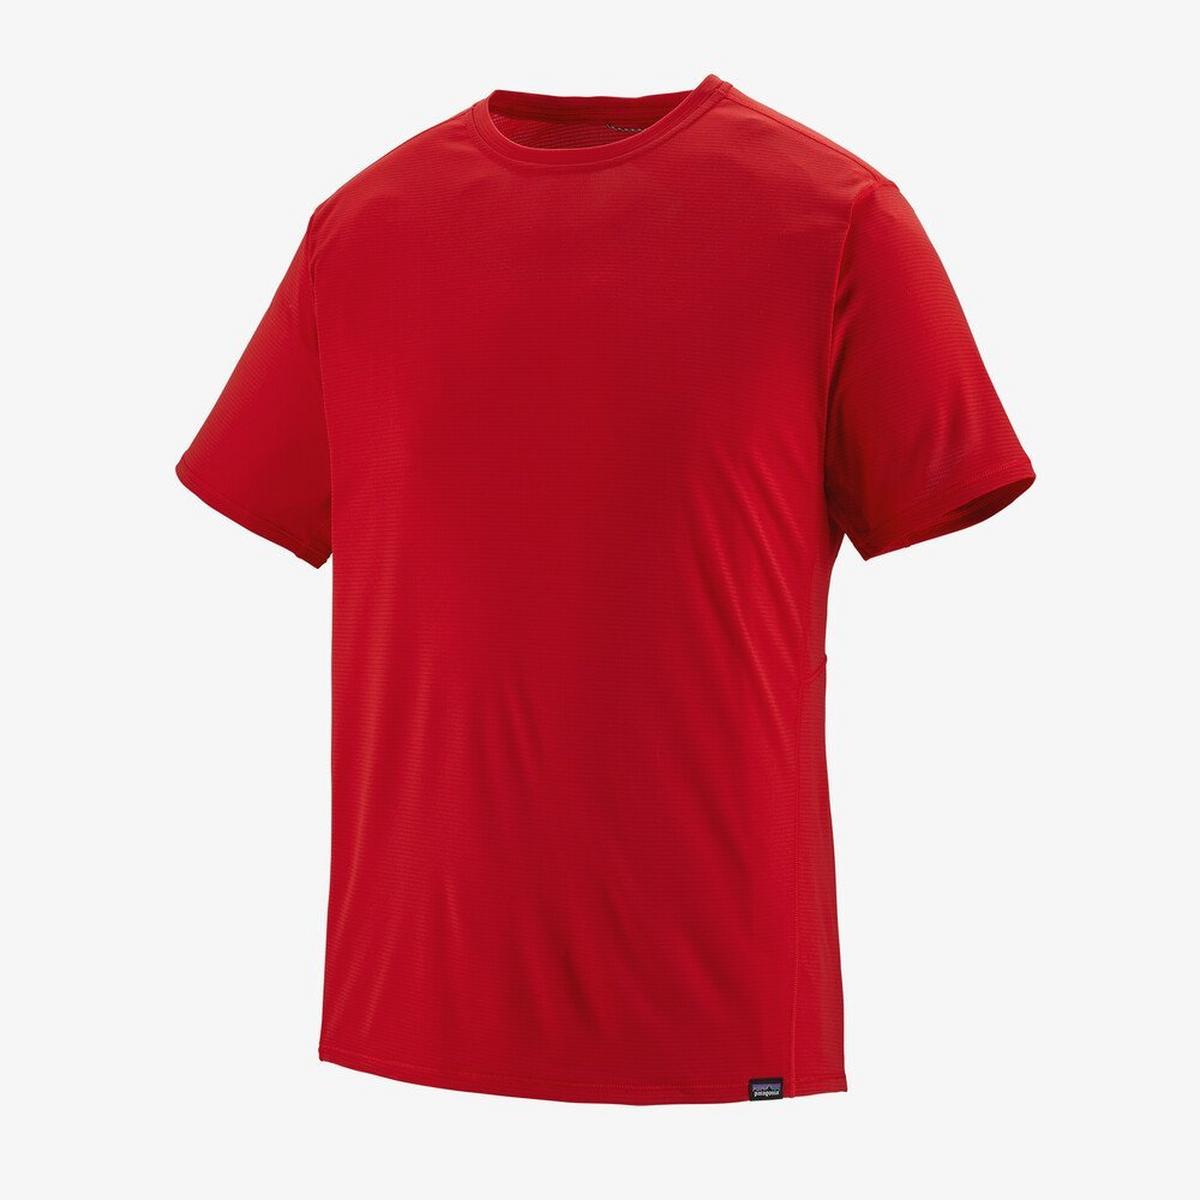 Patagonia Men's Patagonia Capilene Cool Lightweight T-Shirt - Red